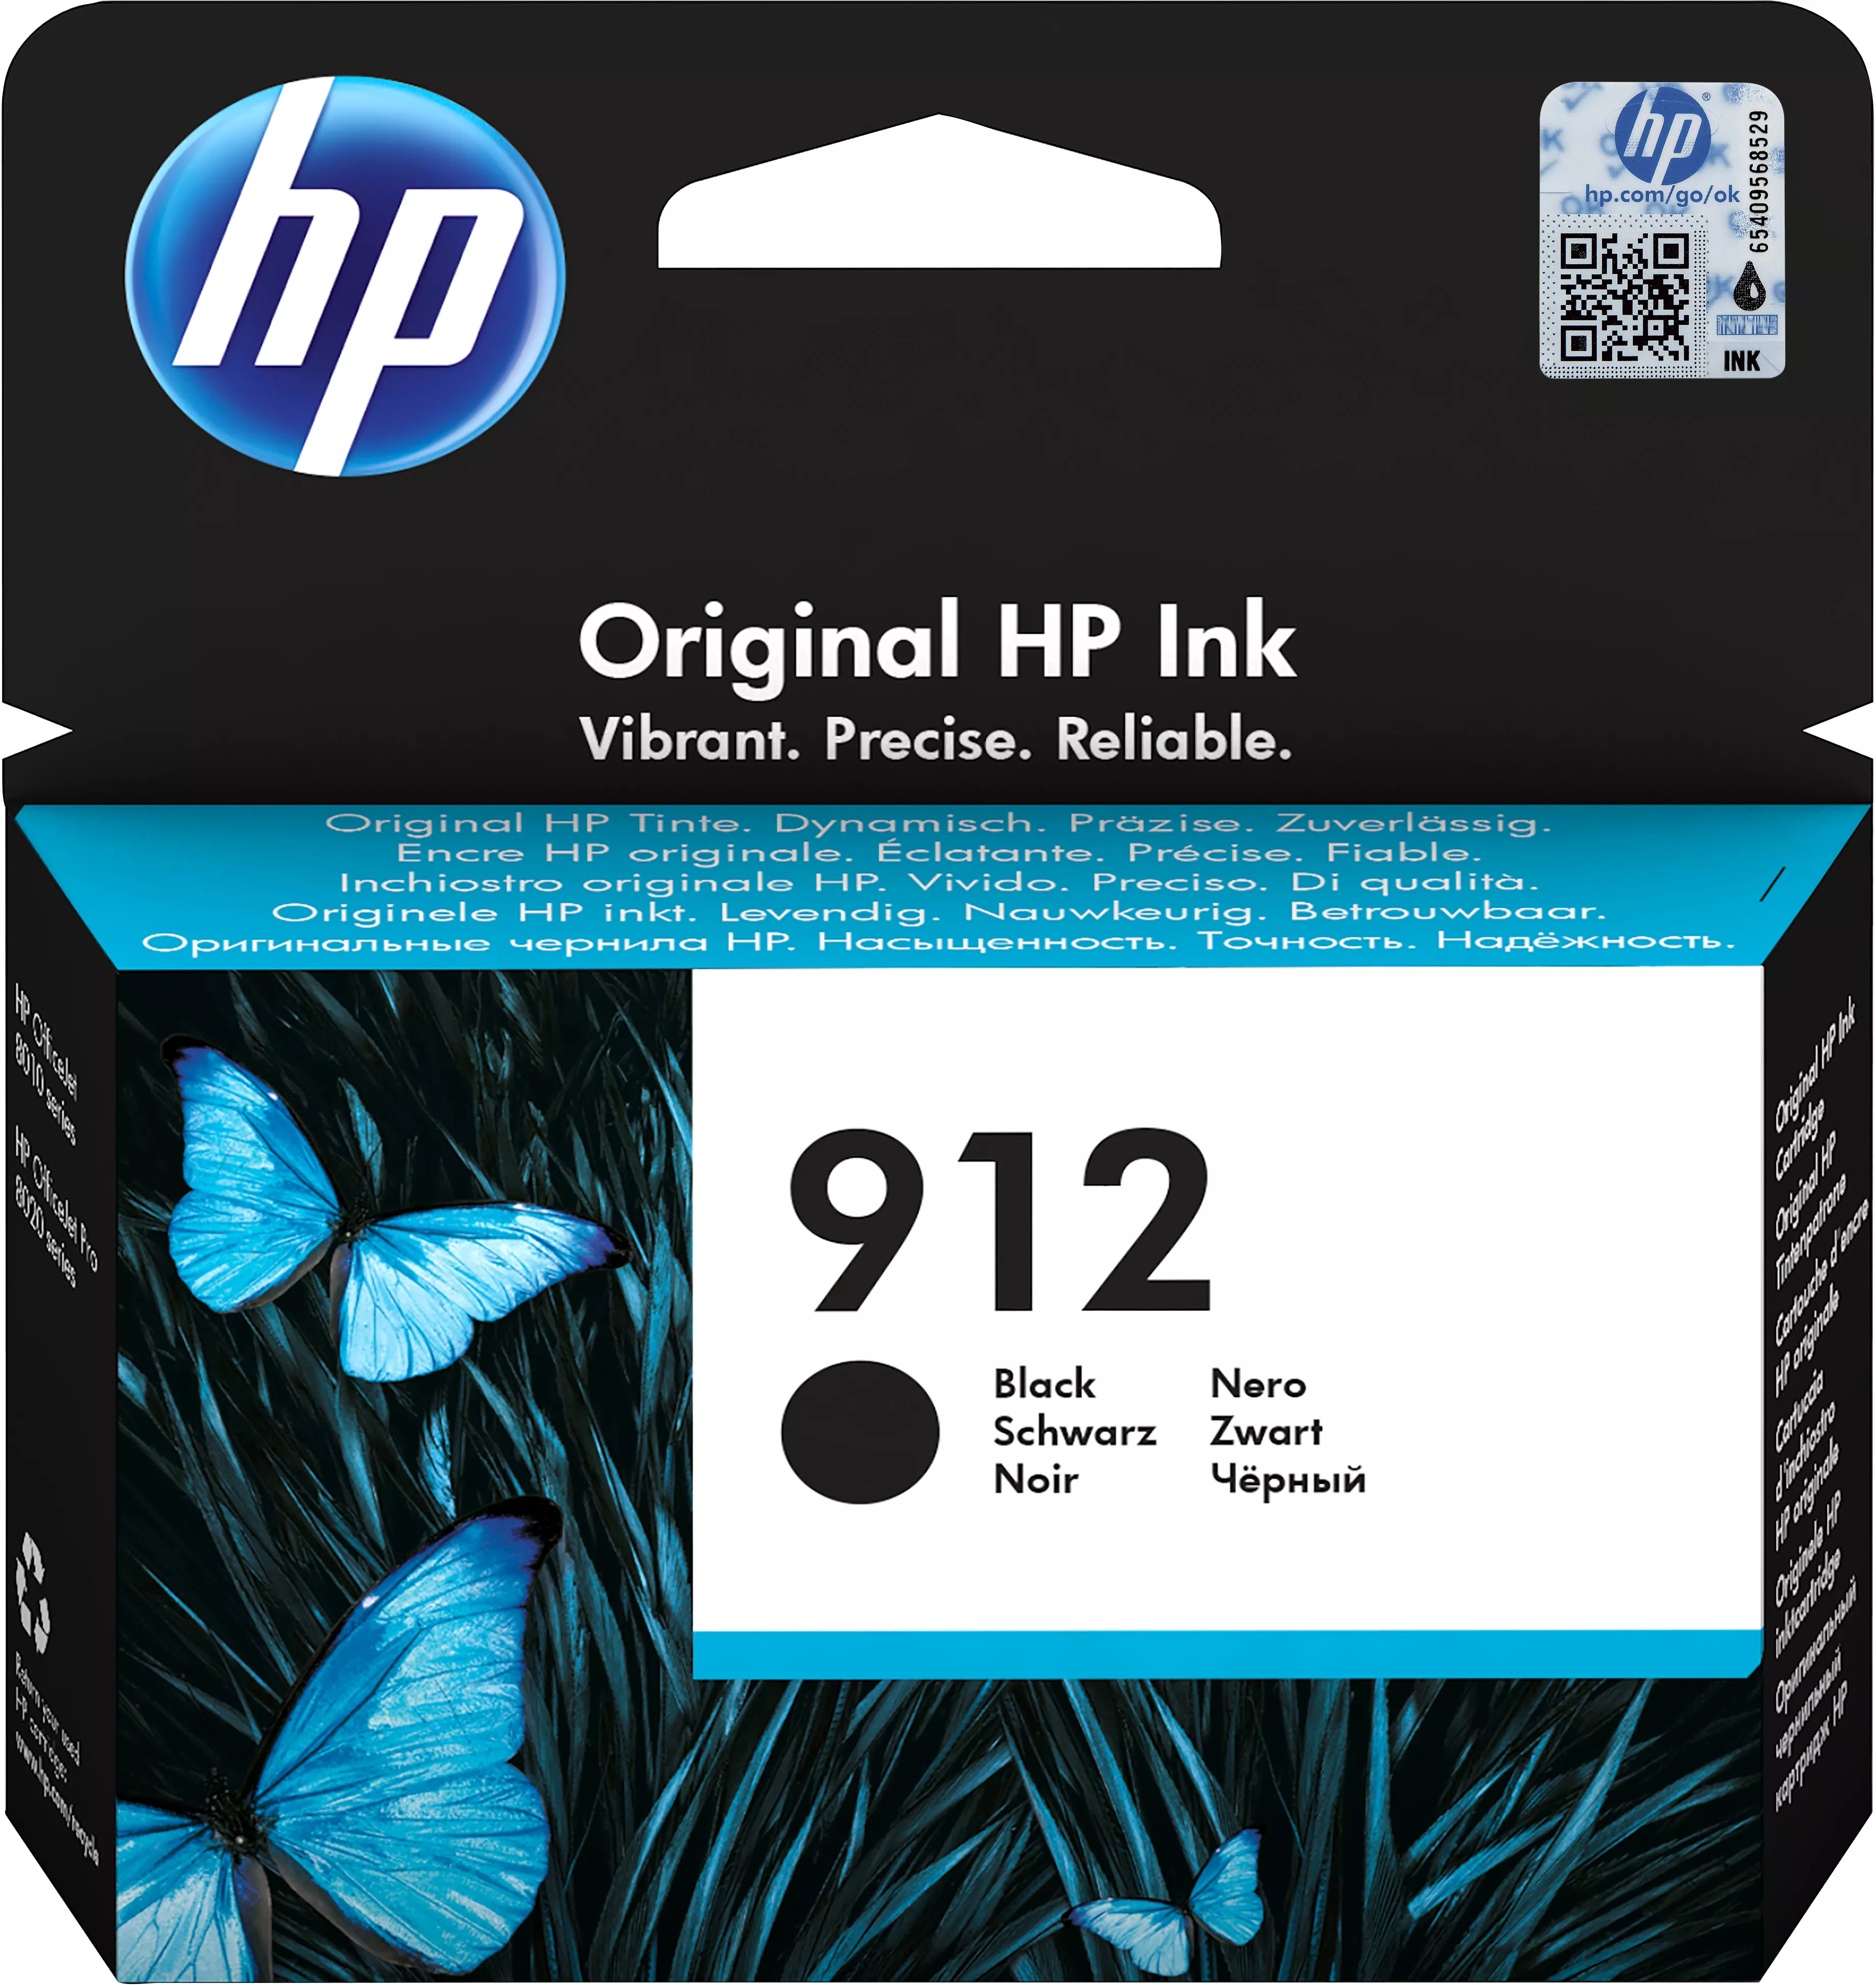 Vente Cartouches d'encre HP 912 Black Ink Cartridge sur hello RSE